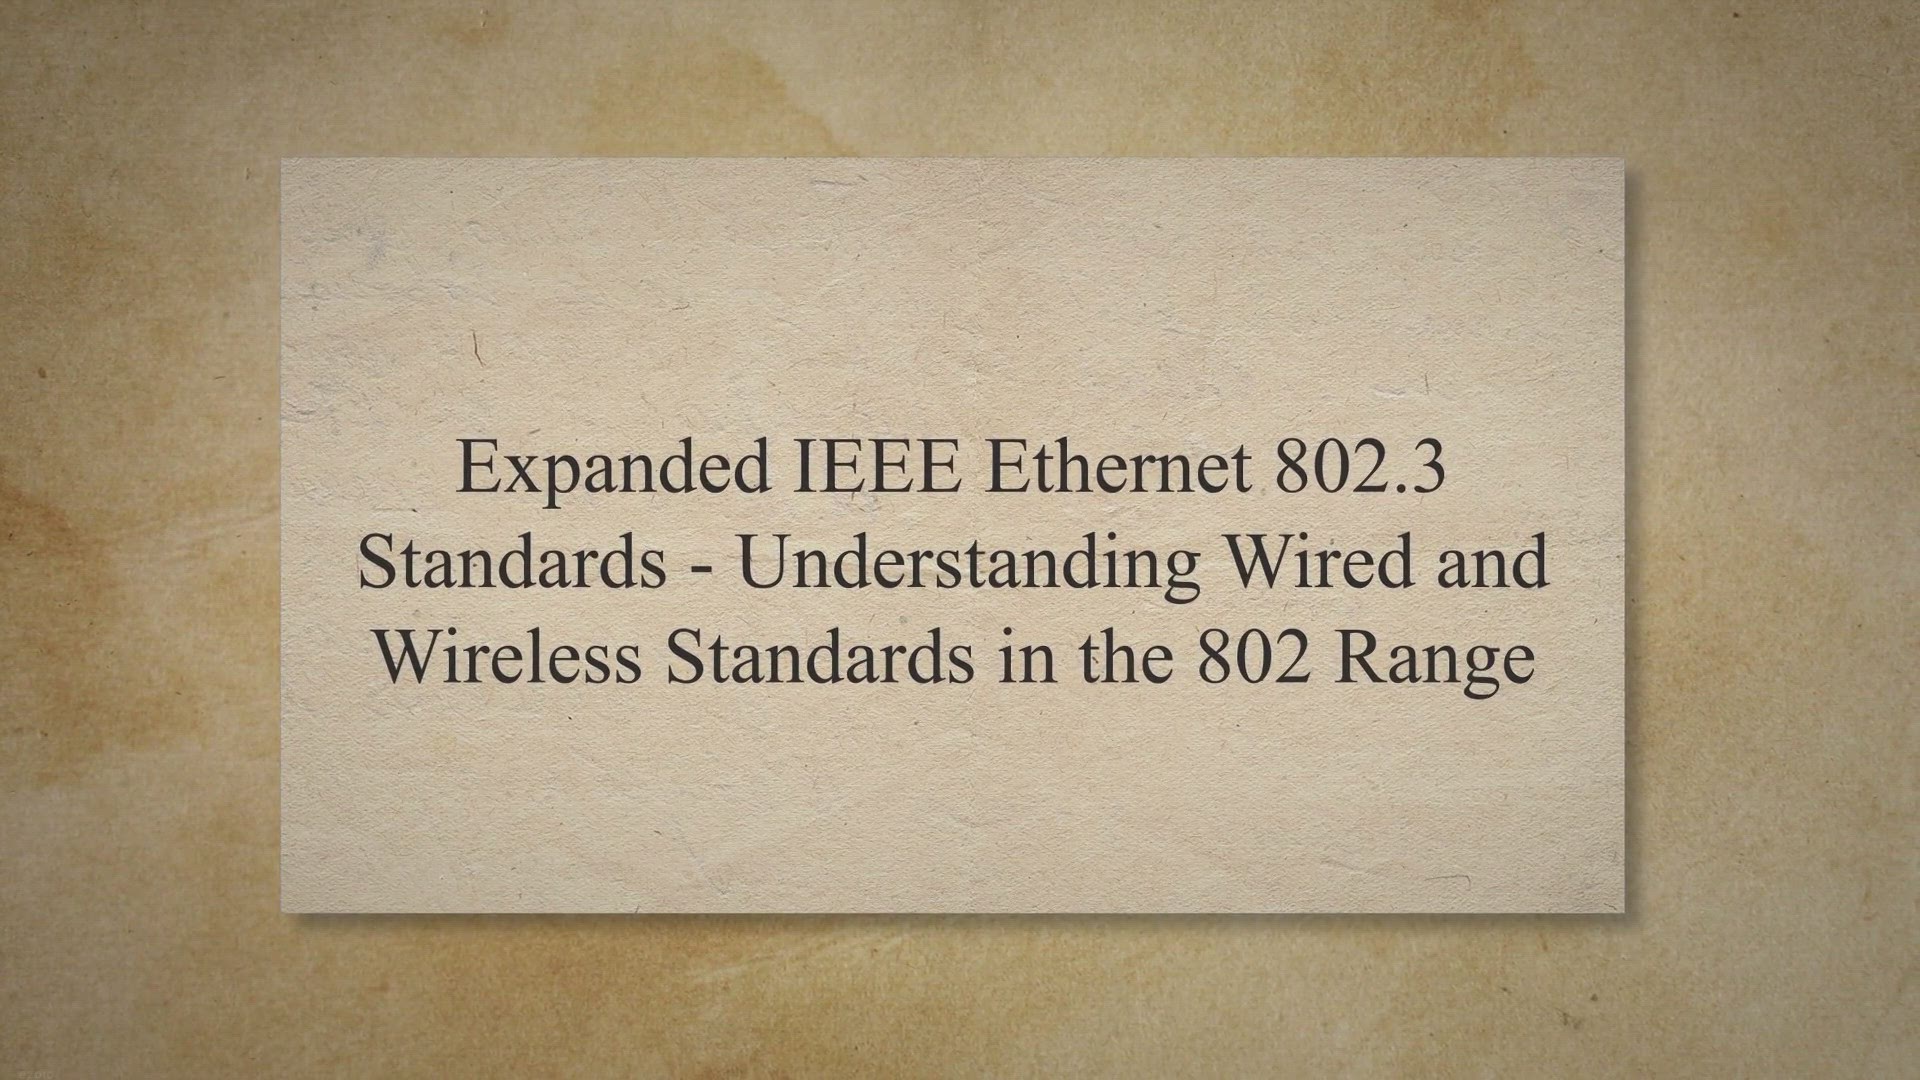 ieee 802 standards